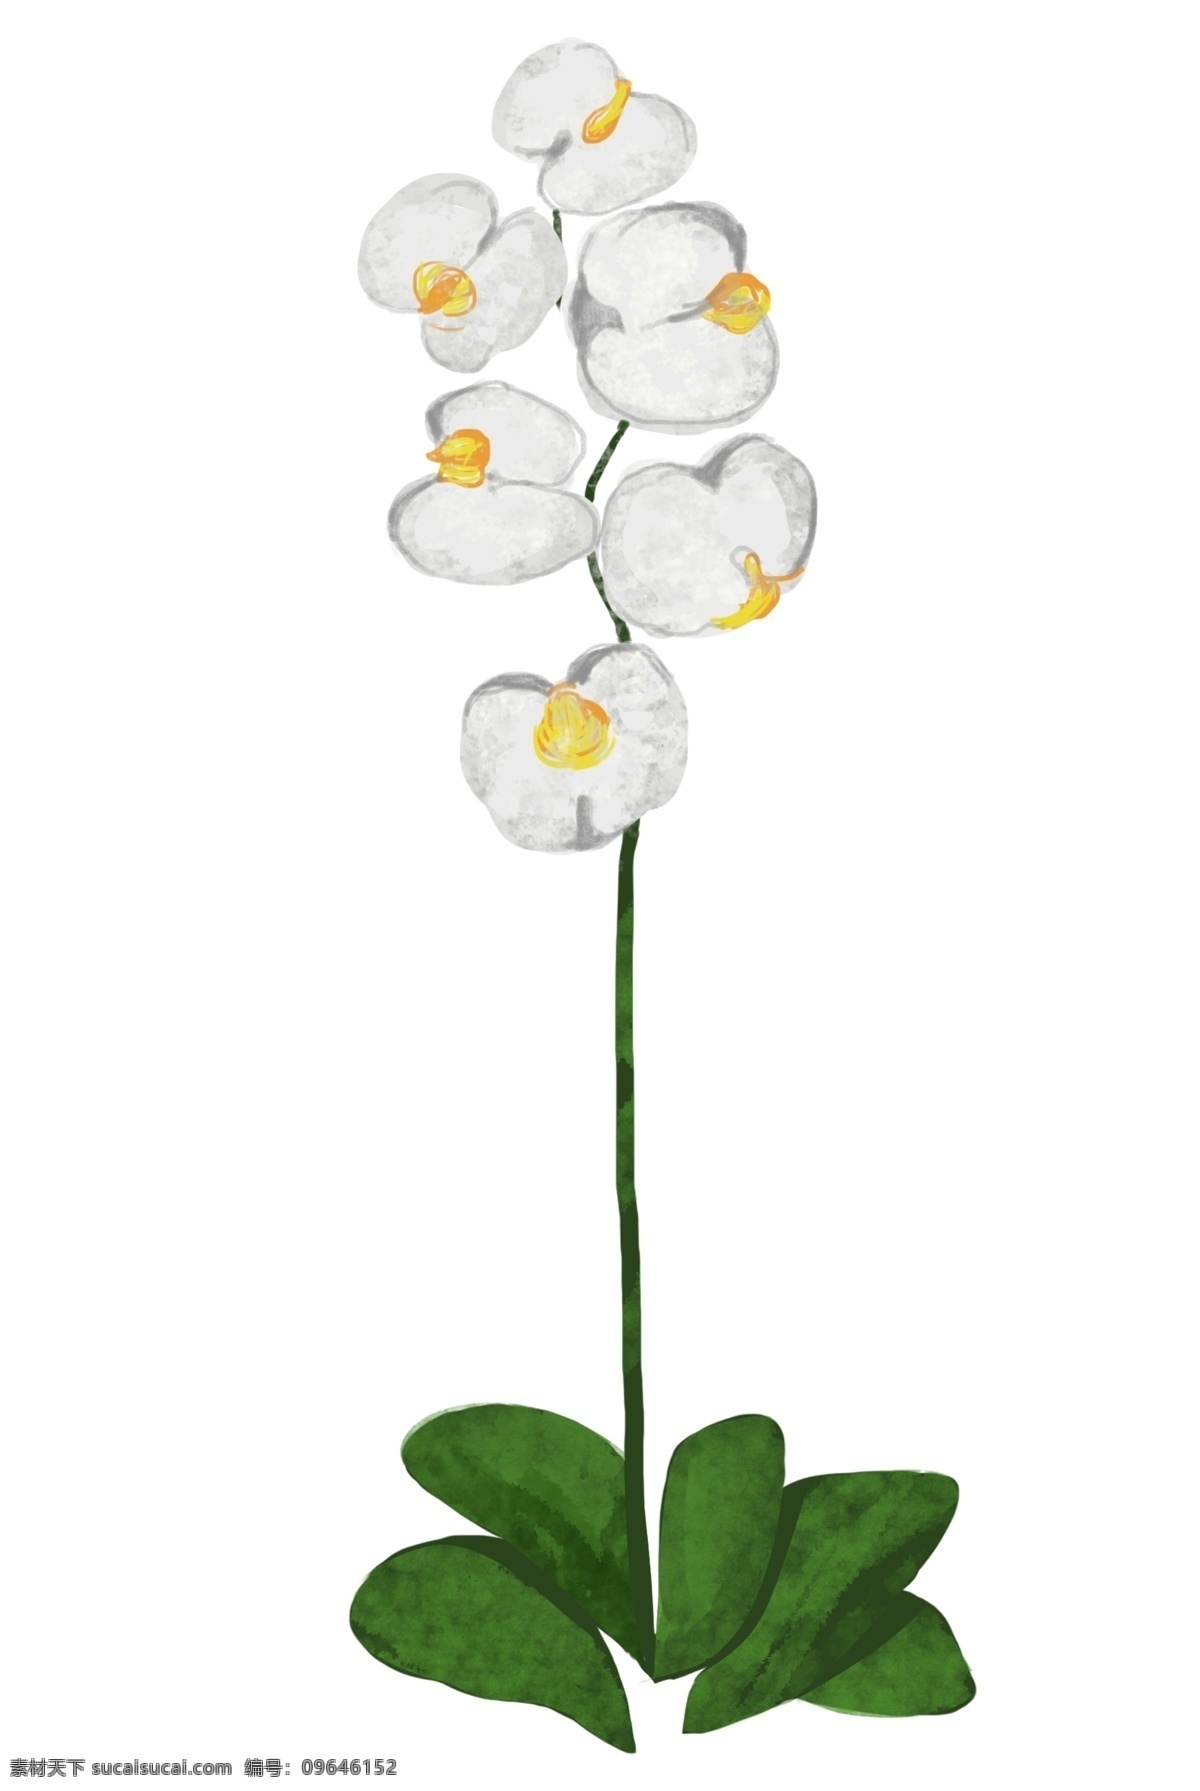 花朵 植物 卡通 插画 花朵的插画 卡通插画 植物插画 漂亮的花朵 白色的花朵 好看的花朵 绽放的花朵